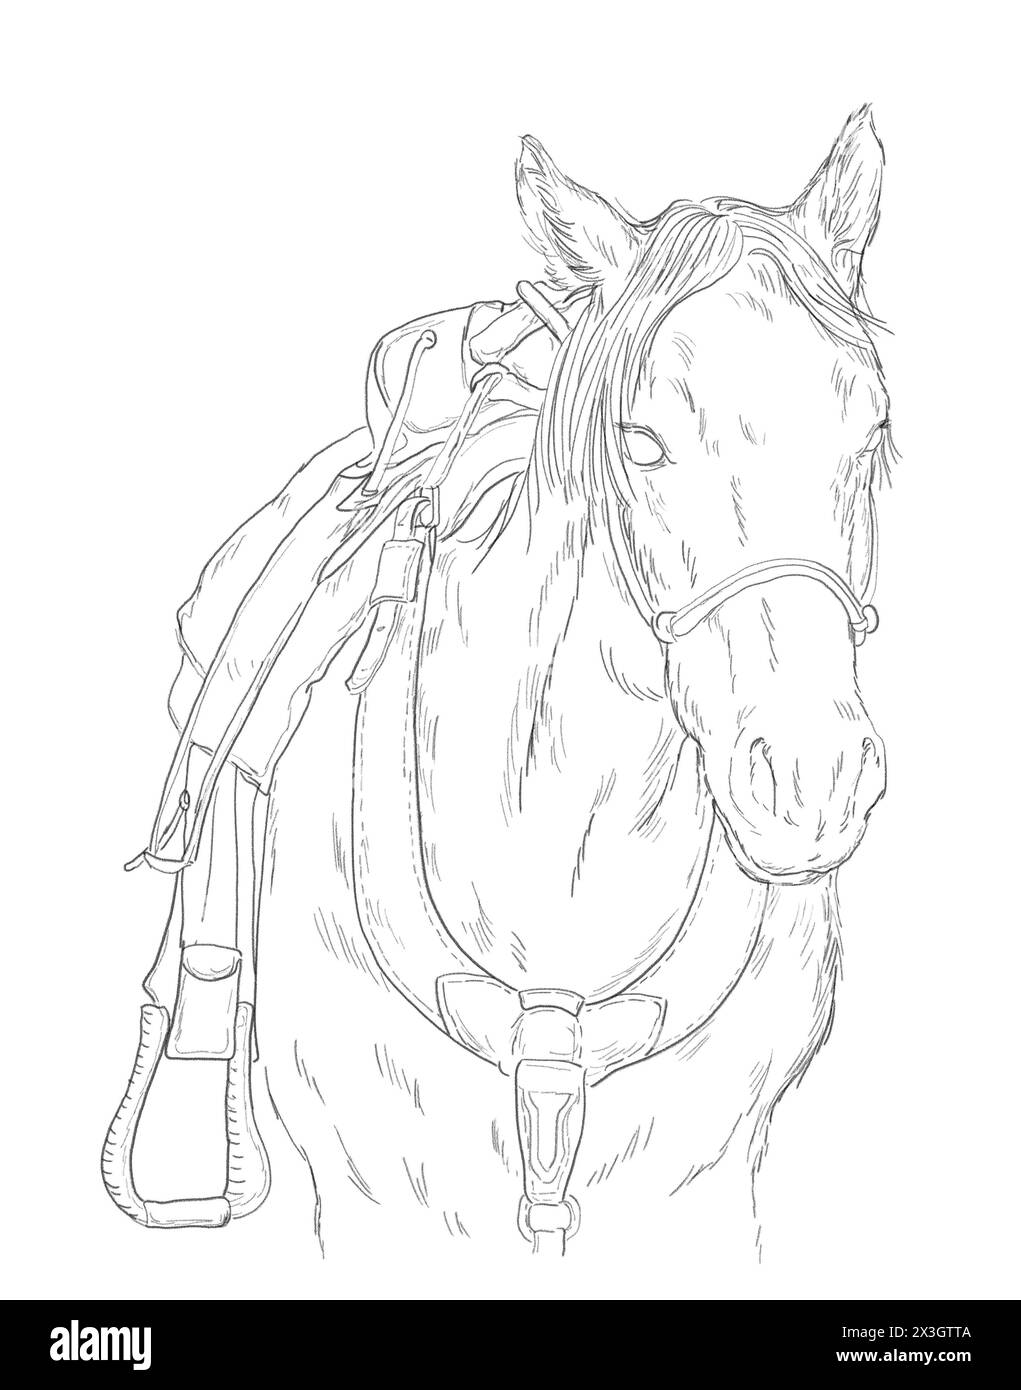 Portrait d'un jeune cheval avec selle occidentale. Dessin d'esquisse en noir et blanc. Concept d'animal de ferme. Banque D'Images